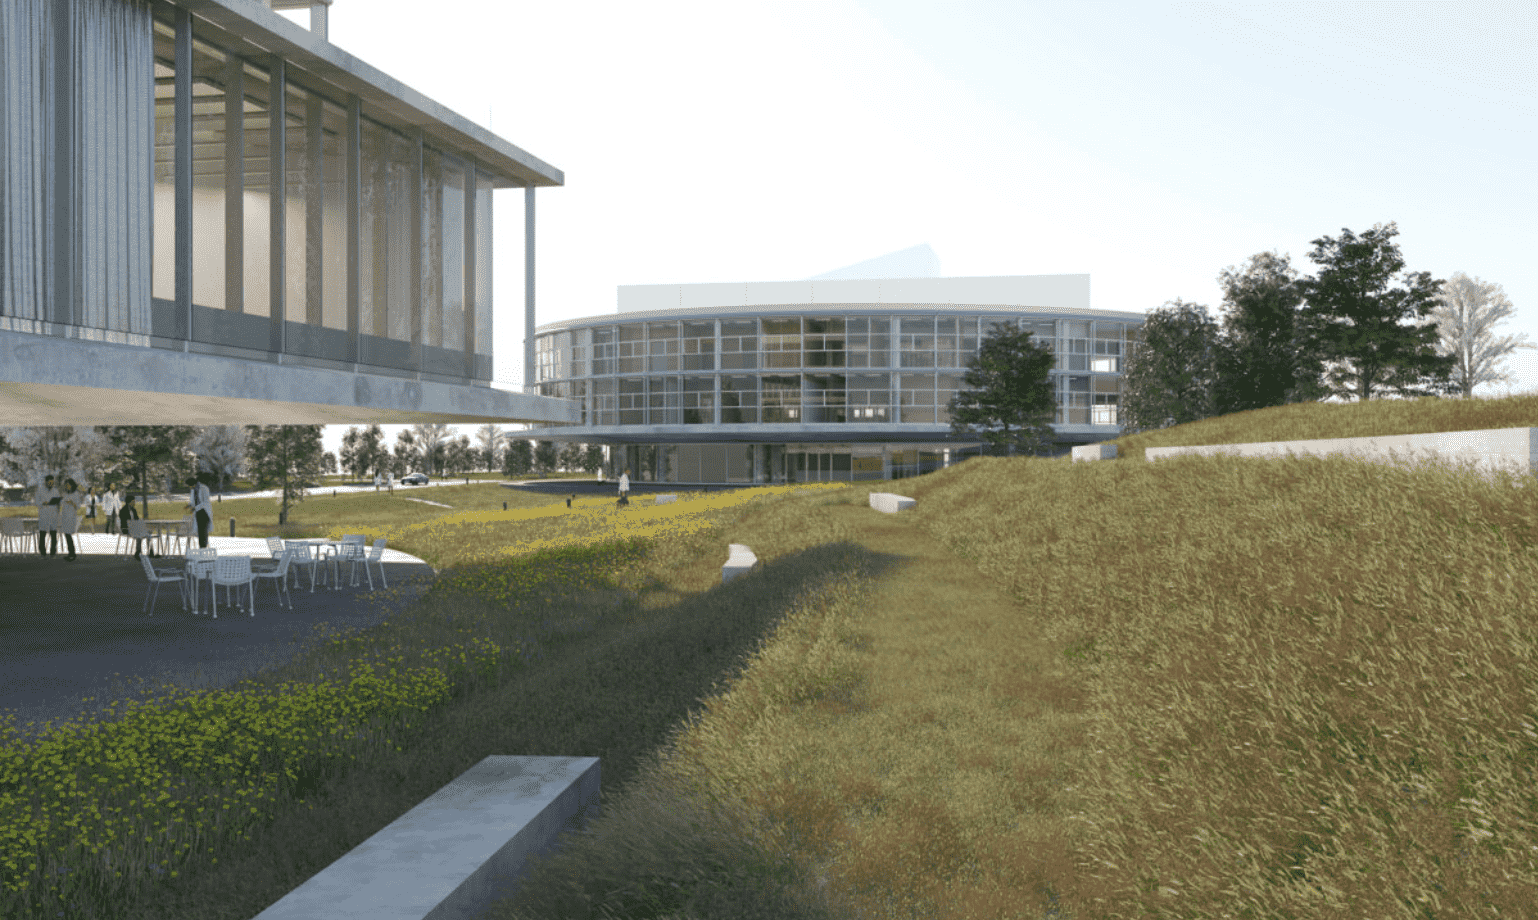 Nouveau campus dédié à la santé près de l’Université de Lausanne, revue de presse du 24 novembre 2020